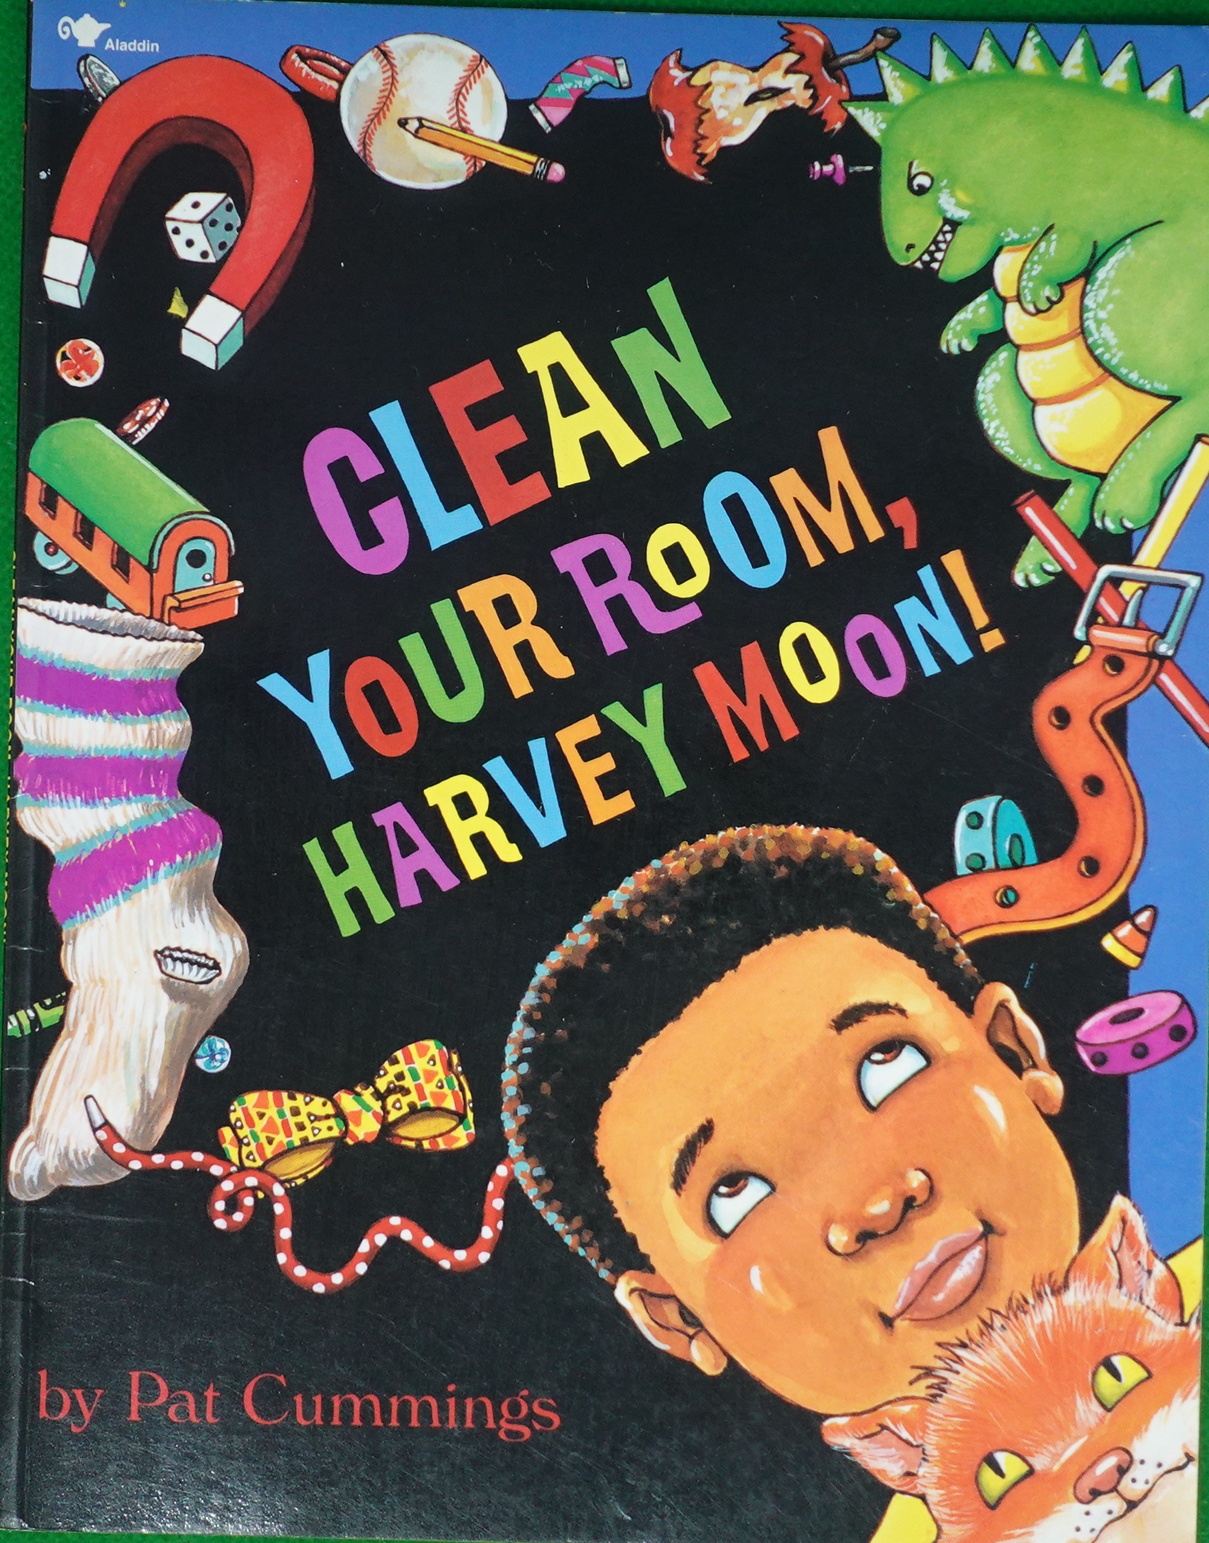 Clean Your Room, Harvey Moon! by Pat Cummings